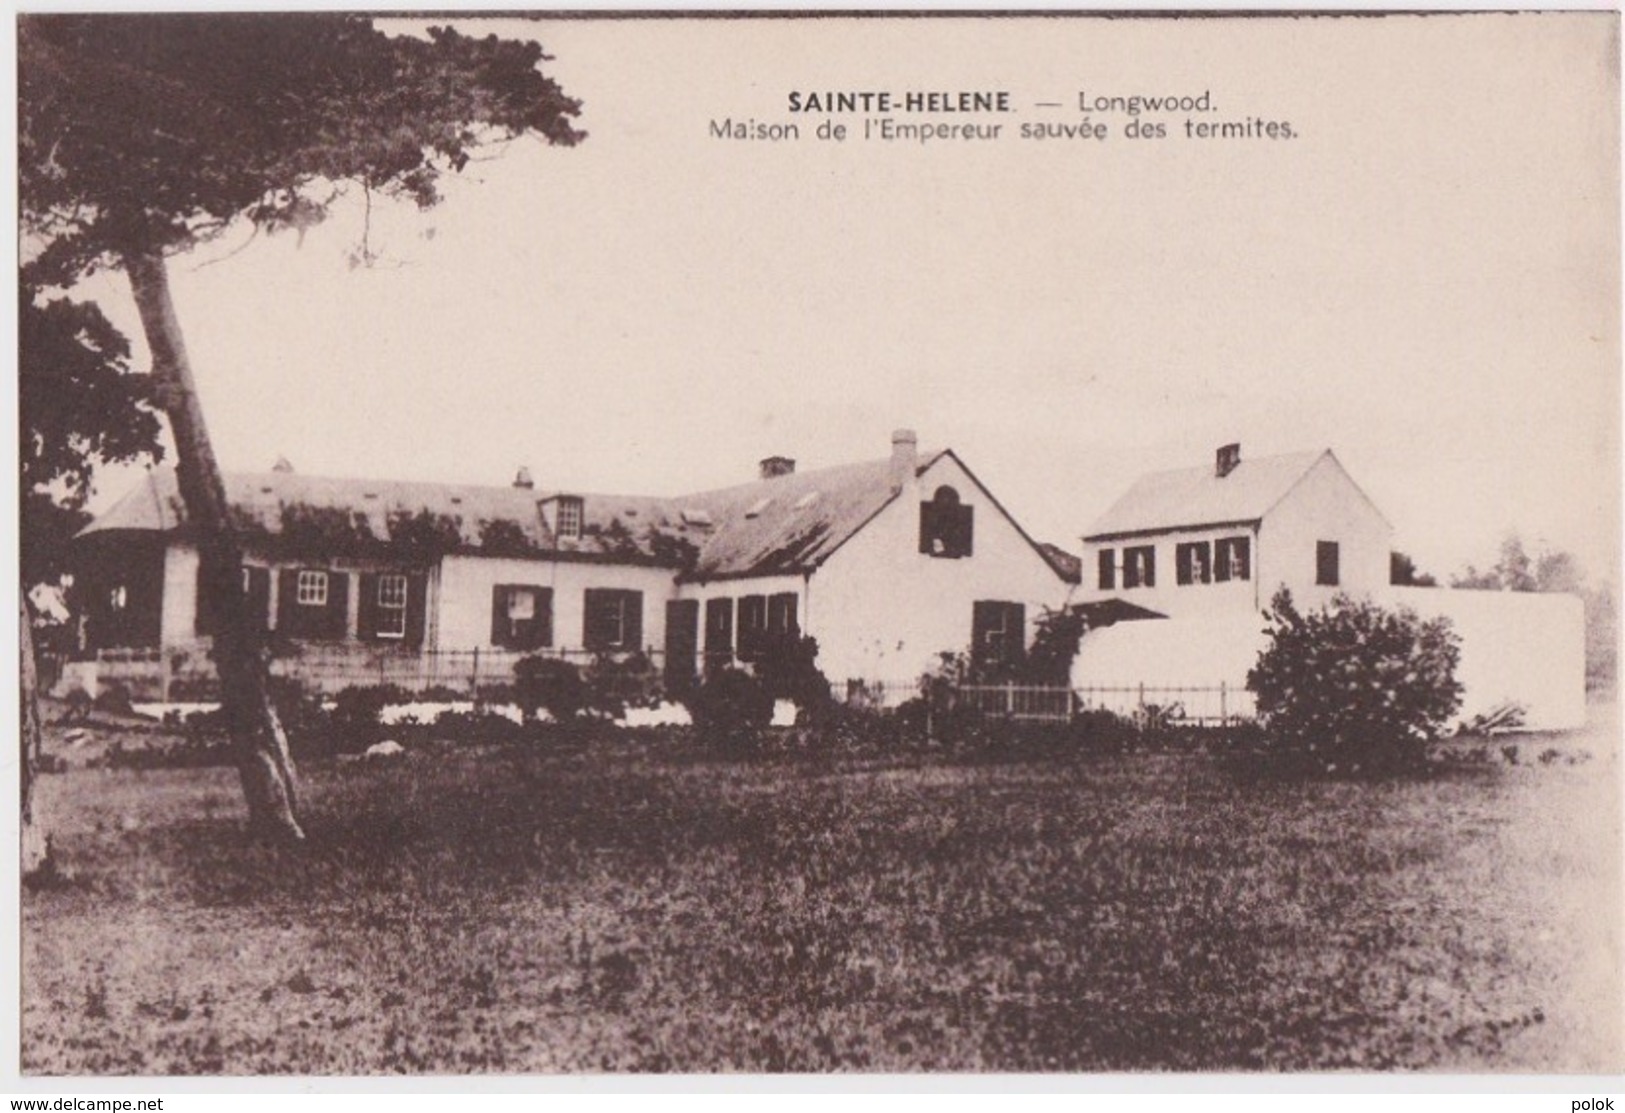 Bx - Cpa SAINTE HELENE - Longwood - Maison De L'Emperuer Napoleon Sauvée Des Termites - Ascension (Insel)